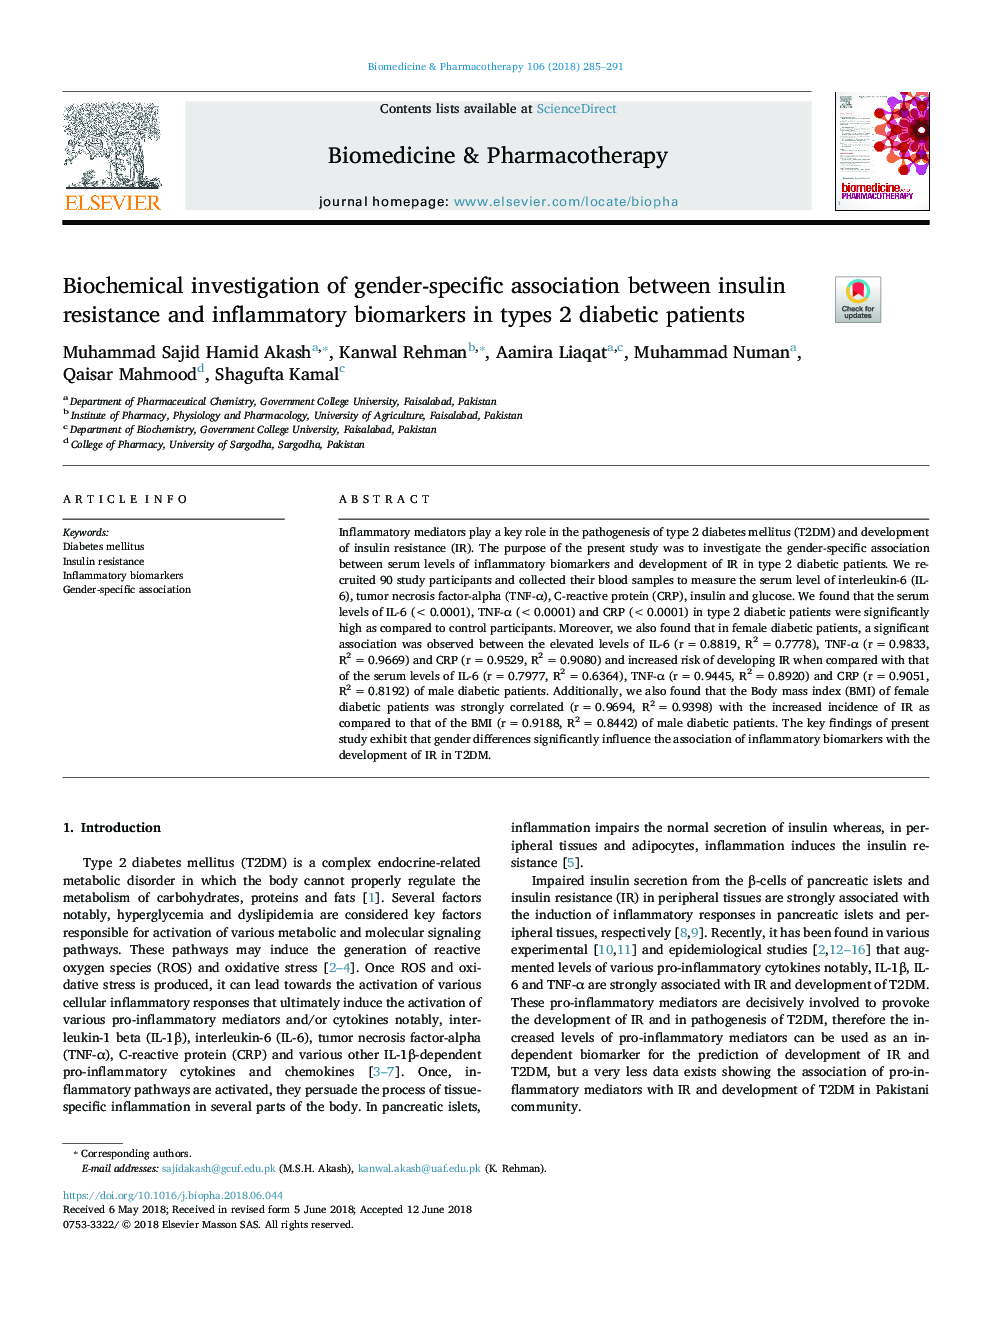 بررسی بیوشیمیایی رابطه جنسیتی بین مقاومت به انسولین و بیومارکرهای التهابی در بیماران دیابتی نوع 2 